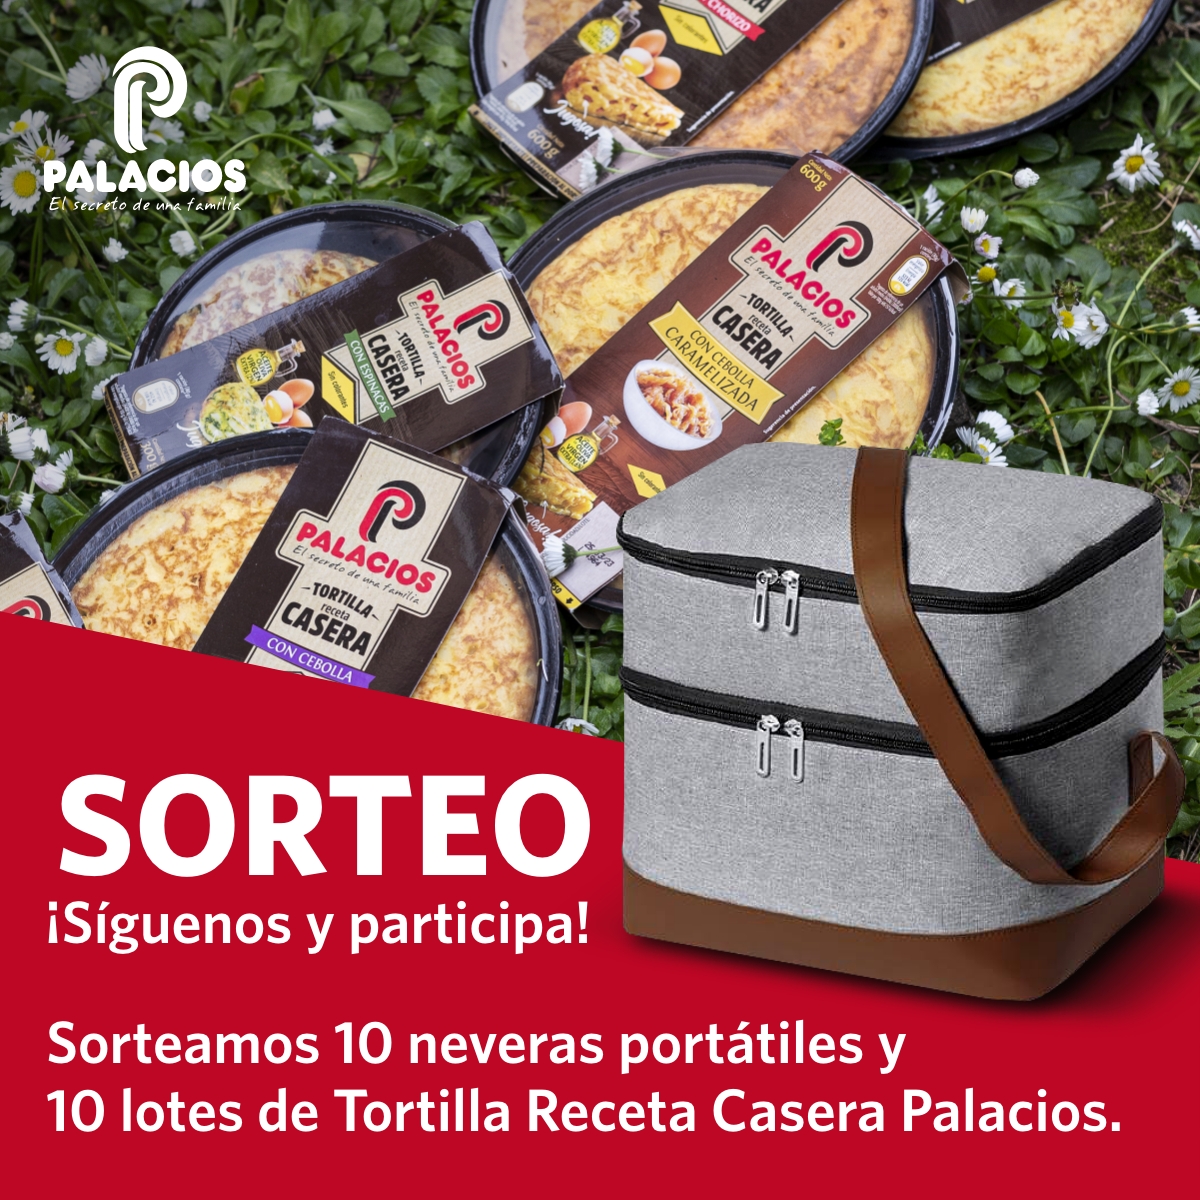 Gana una nevera portátil y disfruta de un picnic con Tortillas Receta Casera Palacios